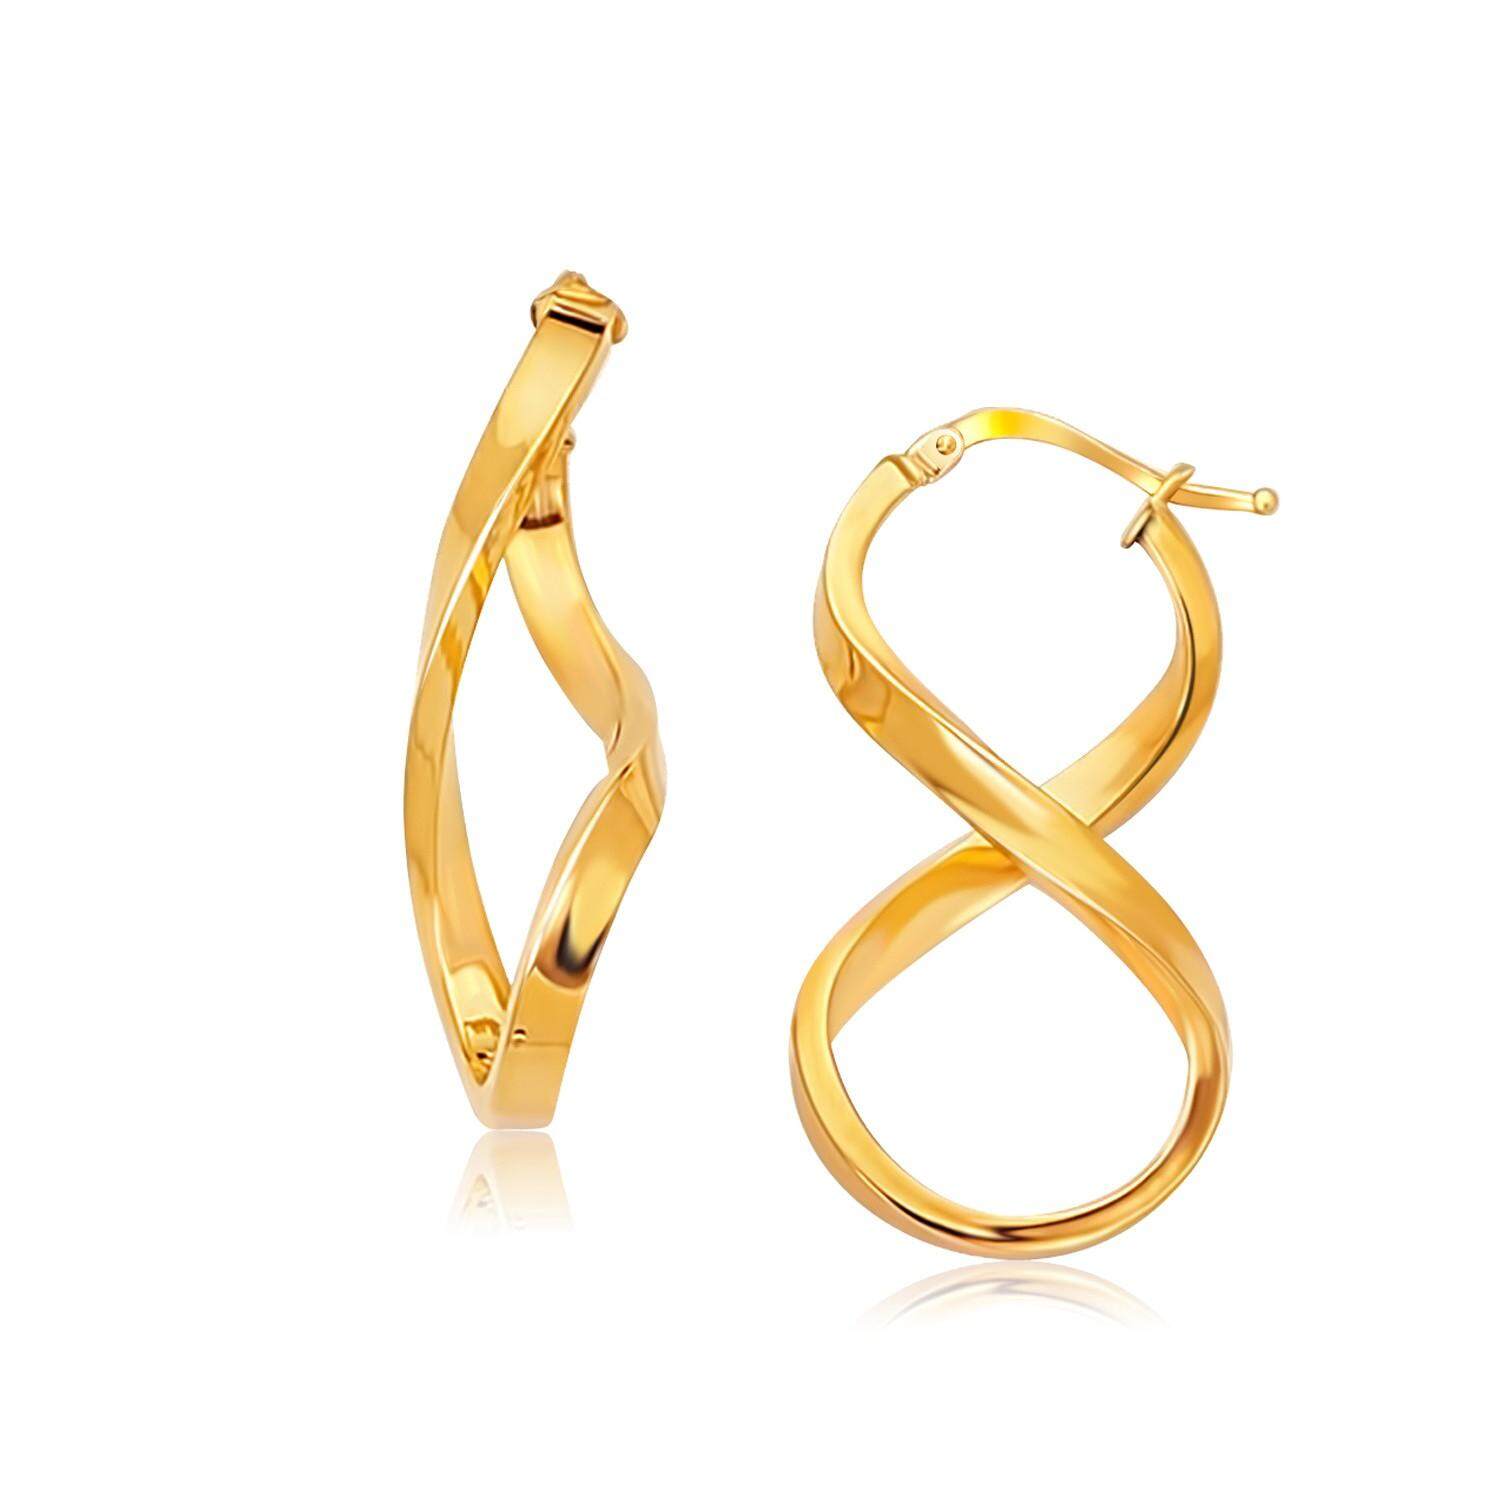 ต่างหูห้อยทองคำแท้ขัดเงารูปความไม่มีขอบเขต(Infinity) 14K  Earrings with polished gold, boundless shape (Infinity) 14K